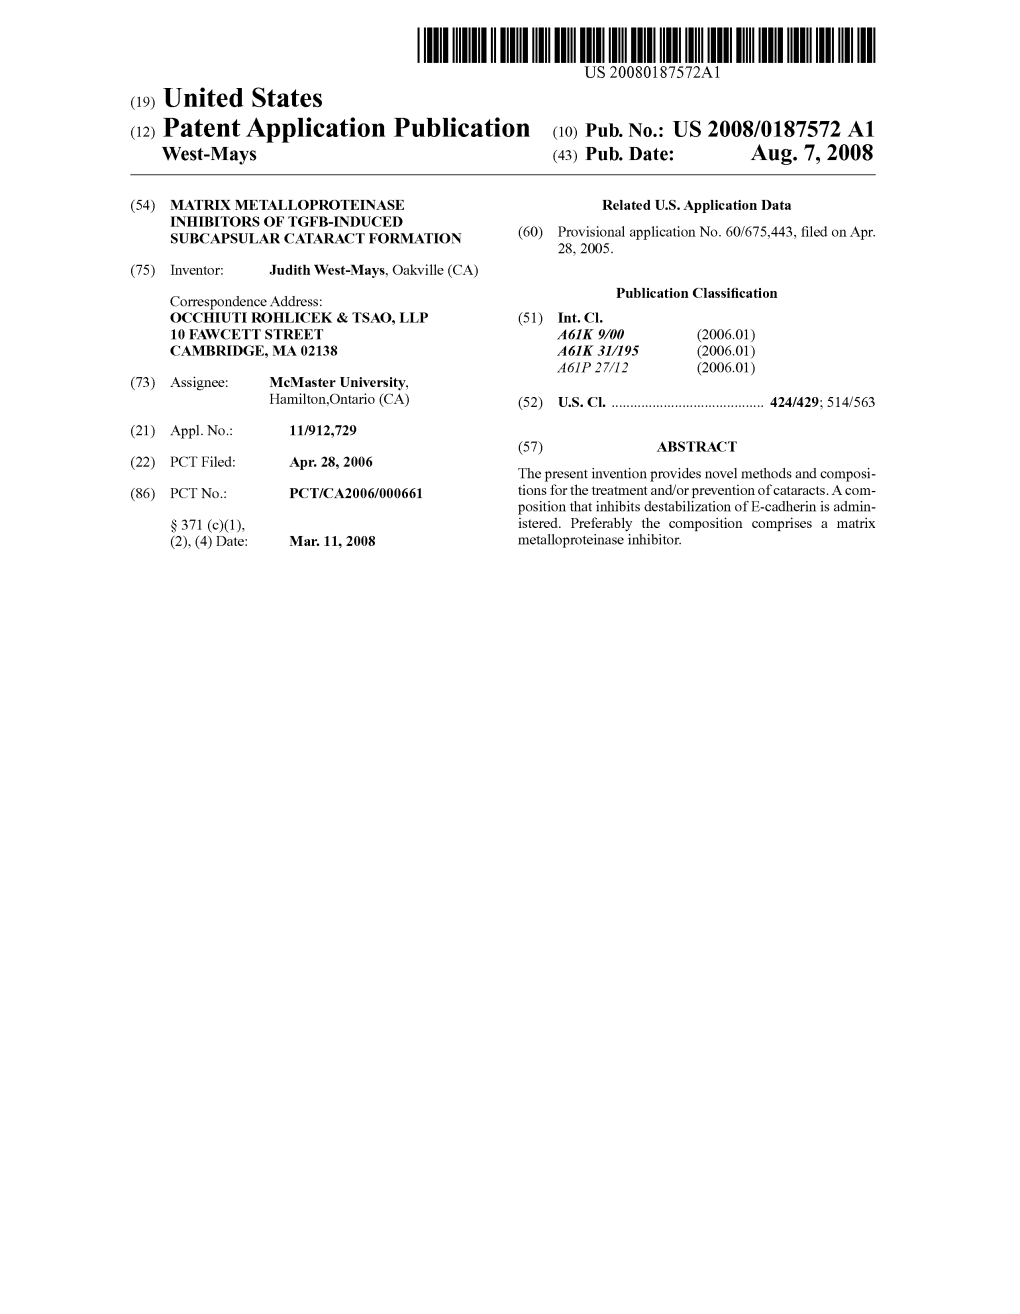 (12) Patent Application Publication (10) Pub. No.: US 2008/0187572 A1 West-Mays (43) Pub